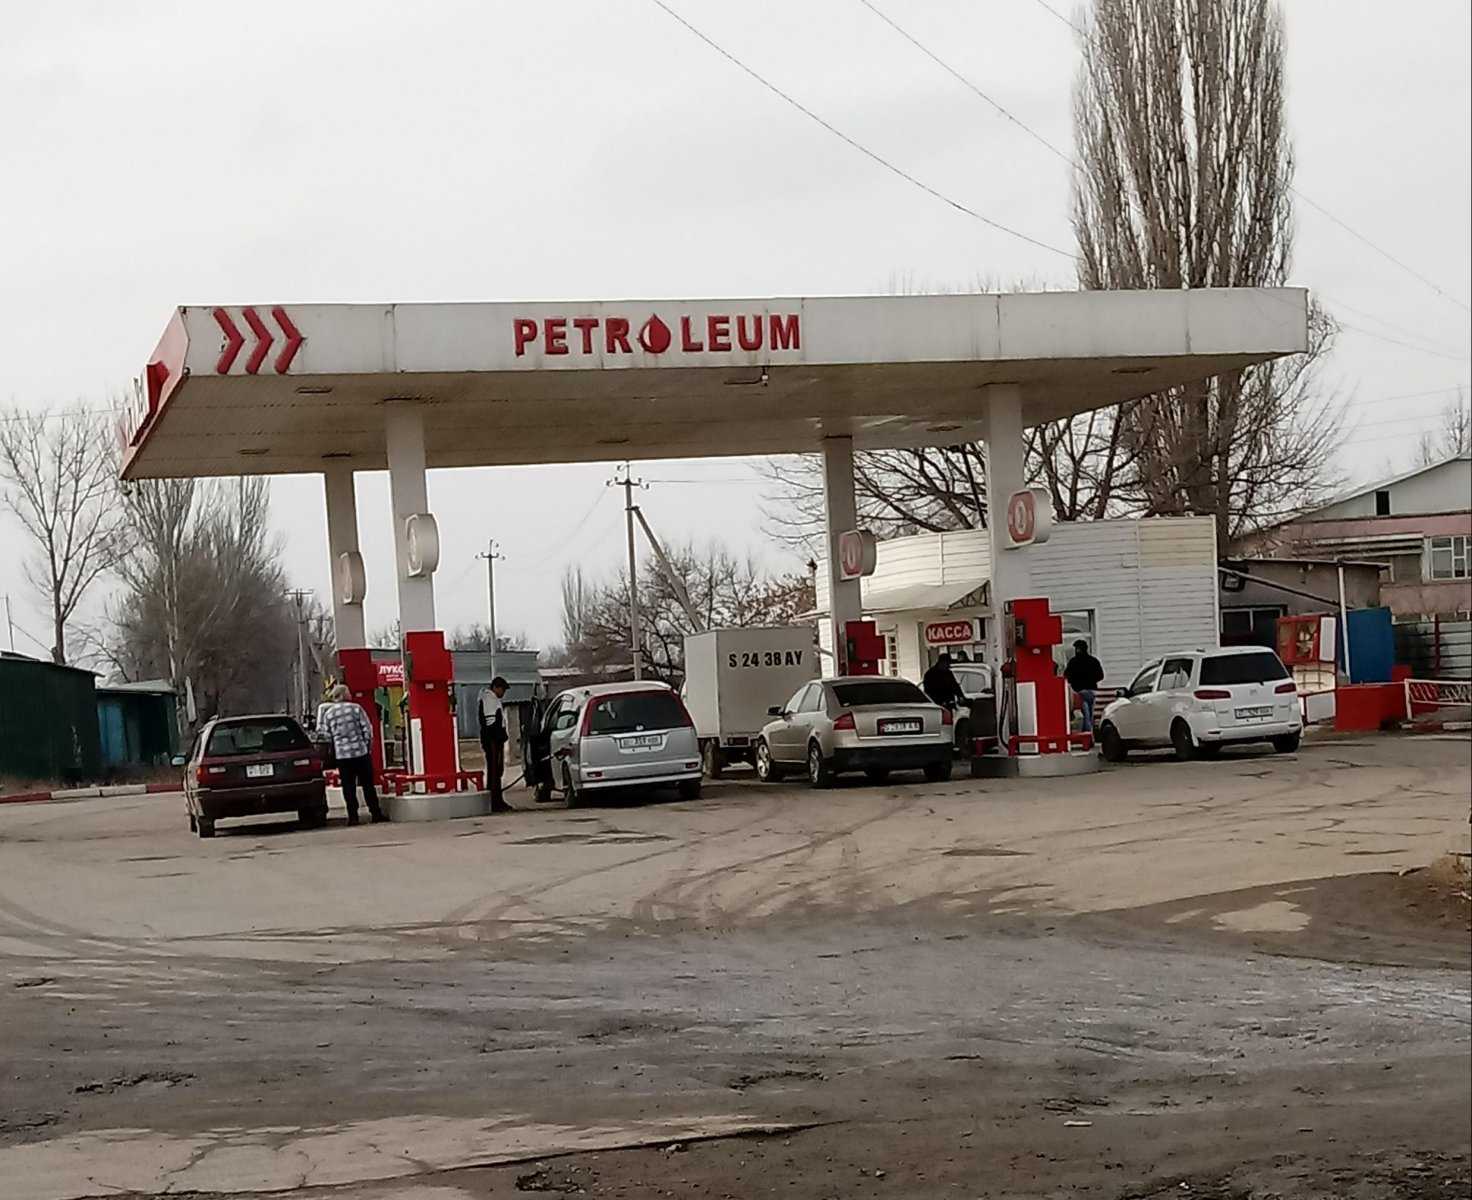 Red petroleum фото 1